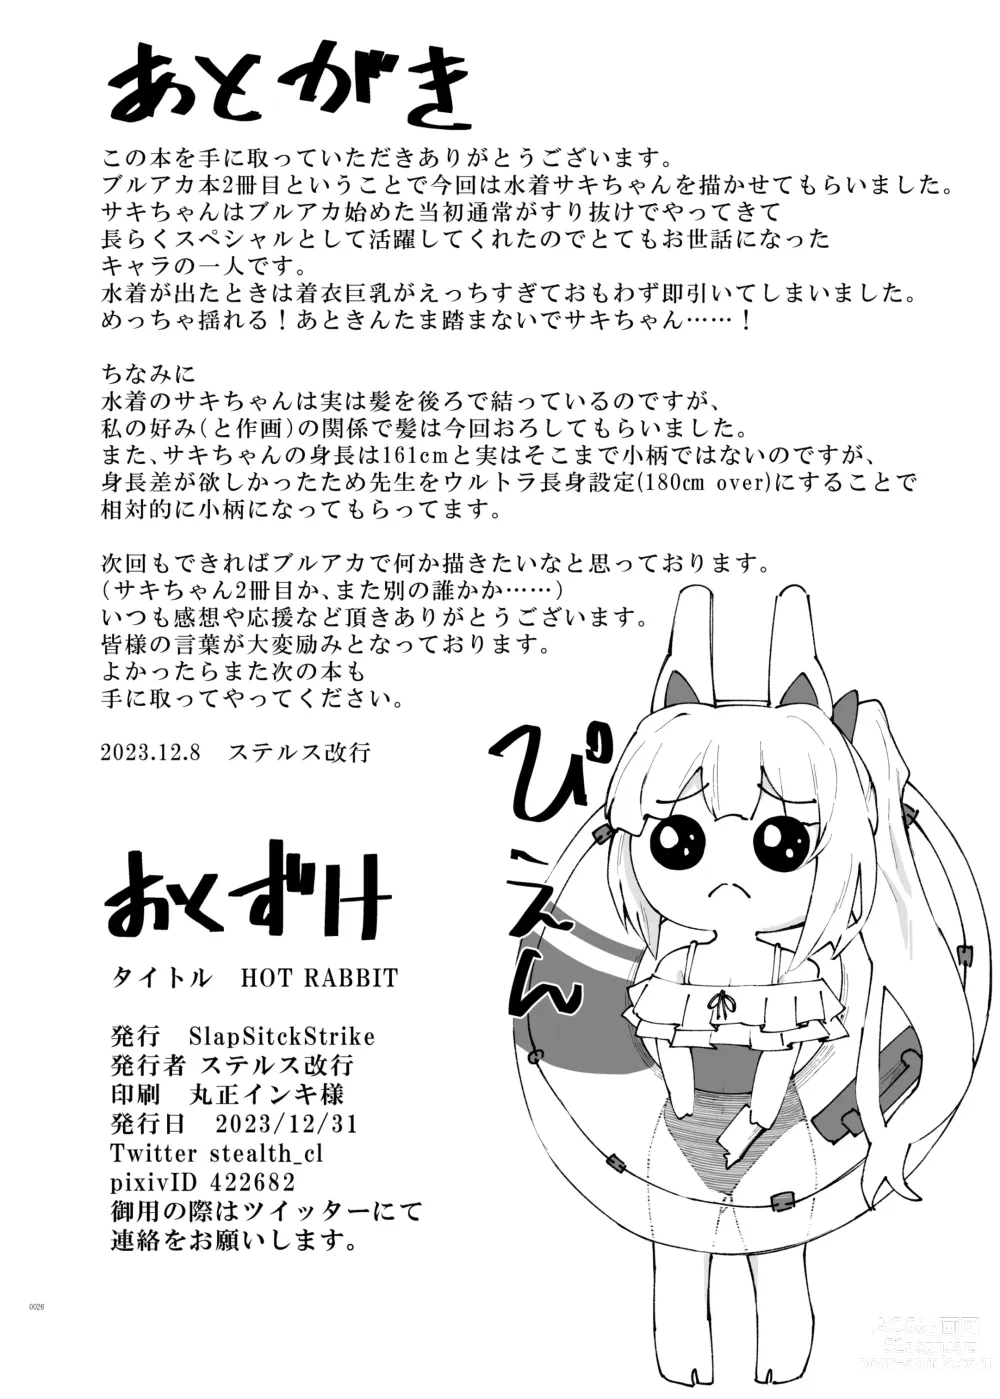 Page 26 of doujinshi HOT RABBIT